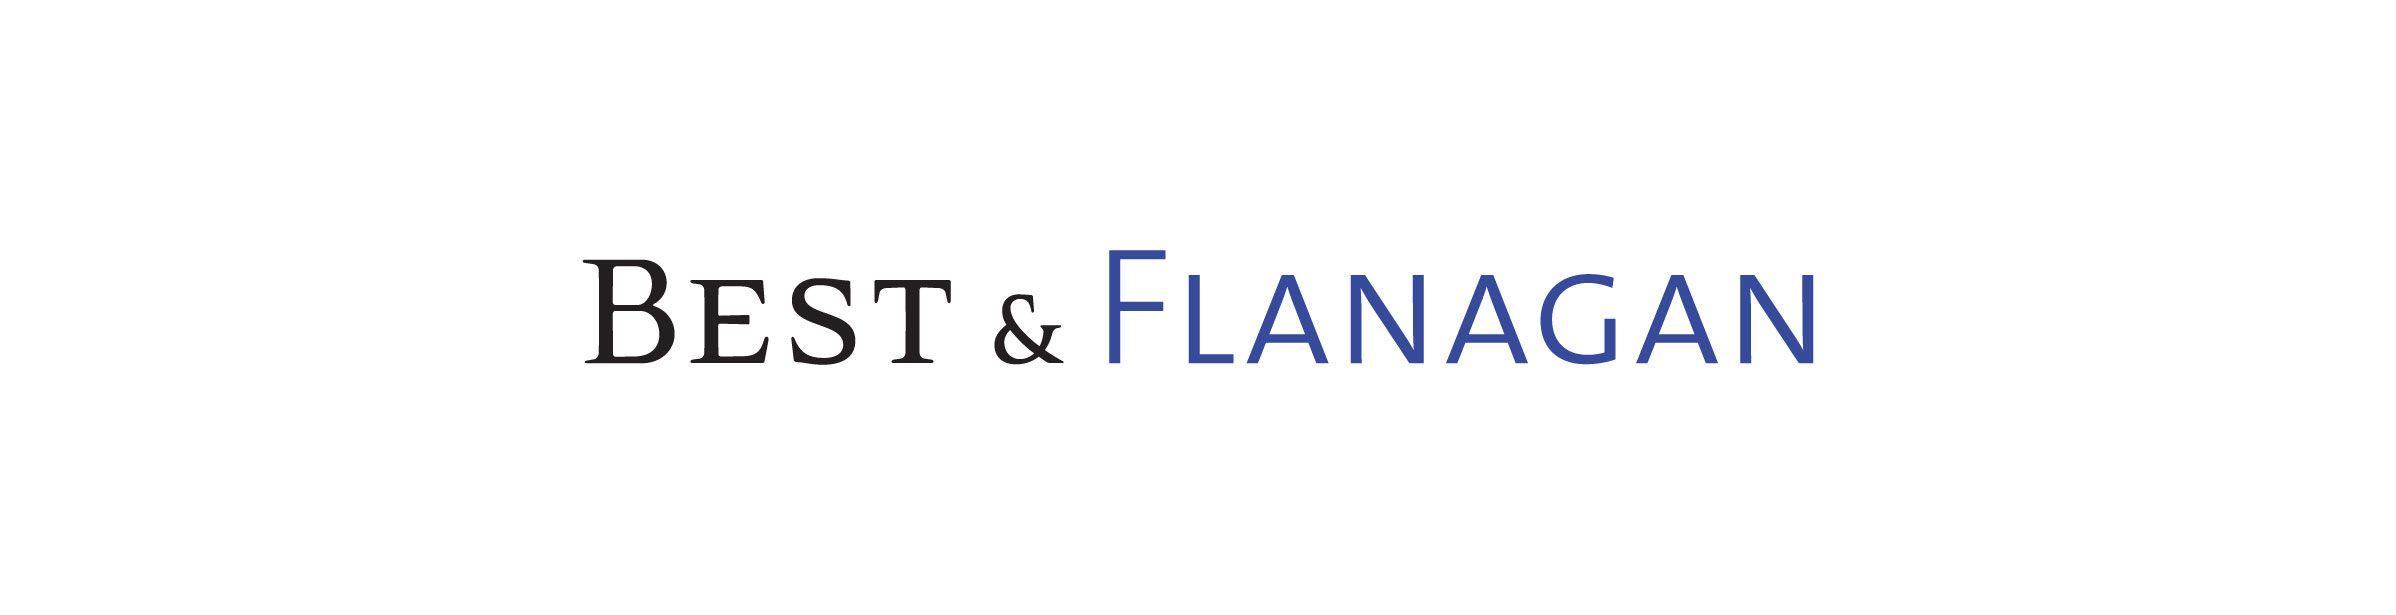 Flanagan Logo - Best & Flanagan - BTD BRAND full-service branding & design agency